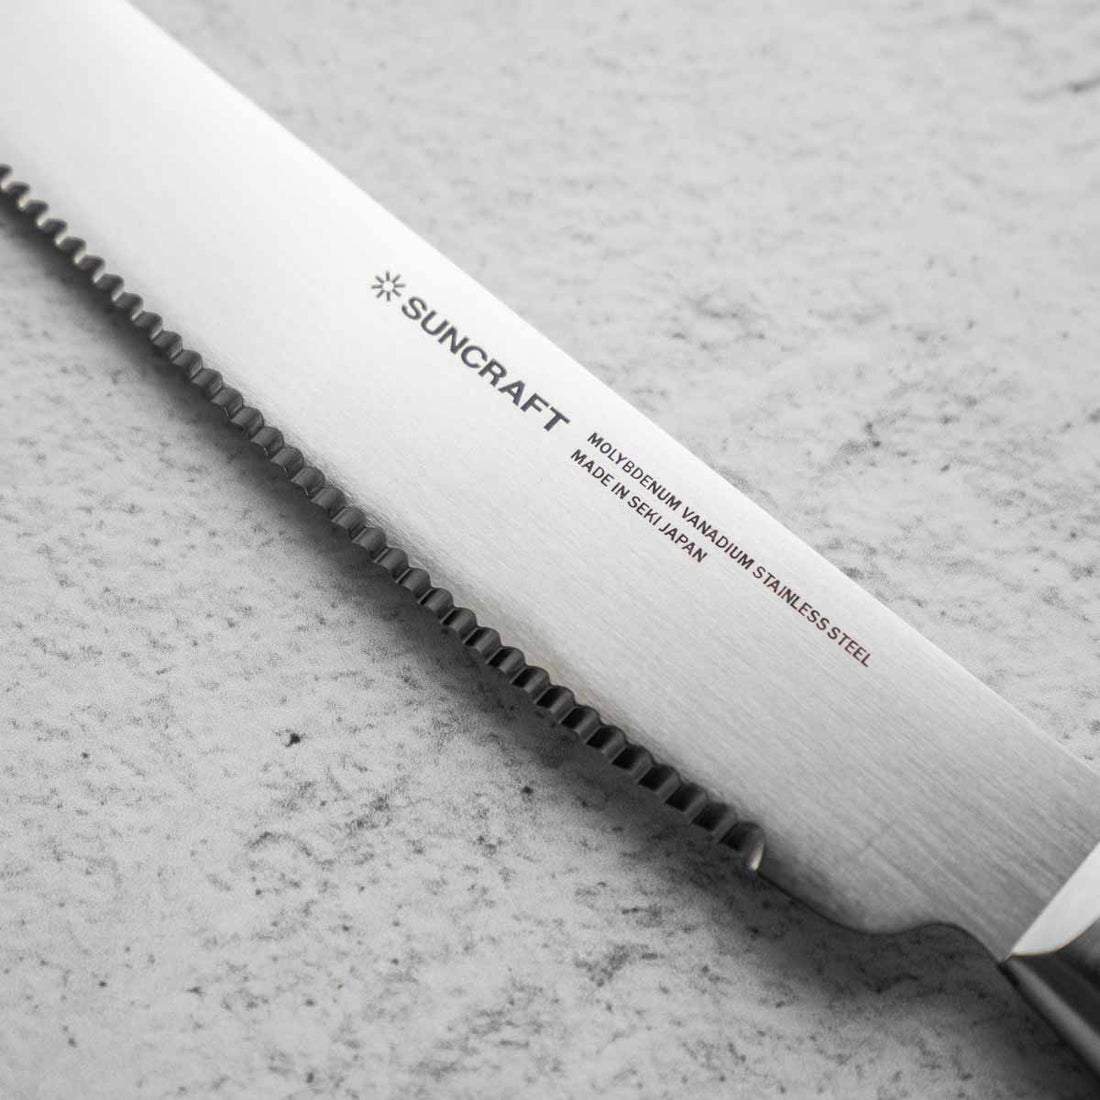 Suncraft "Seseragi" Bread Knife 21cm - Left Handed